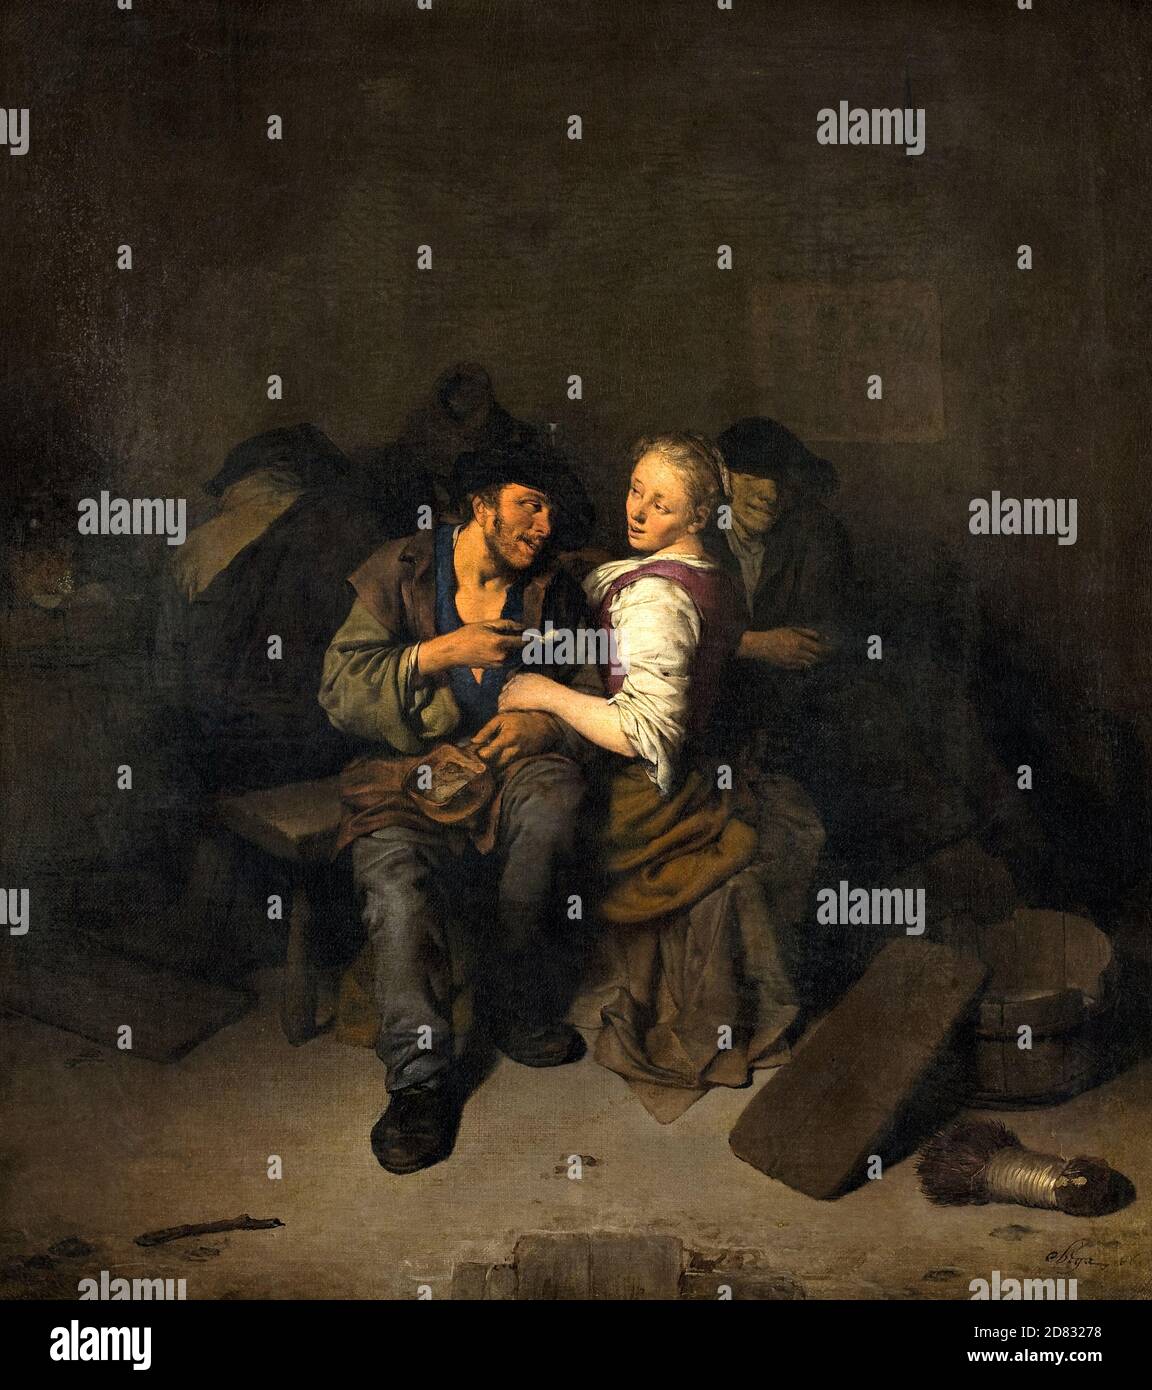 Jeune couple dans une Taverne - Cornelis Pietersz Bega, vers 1661 Banque D'Images